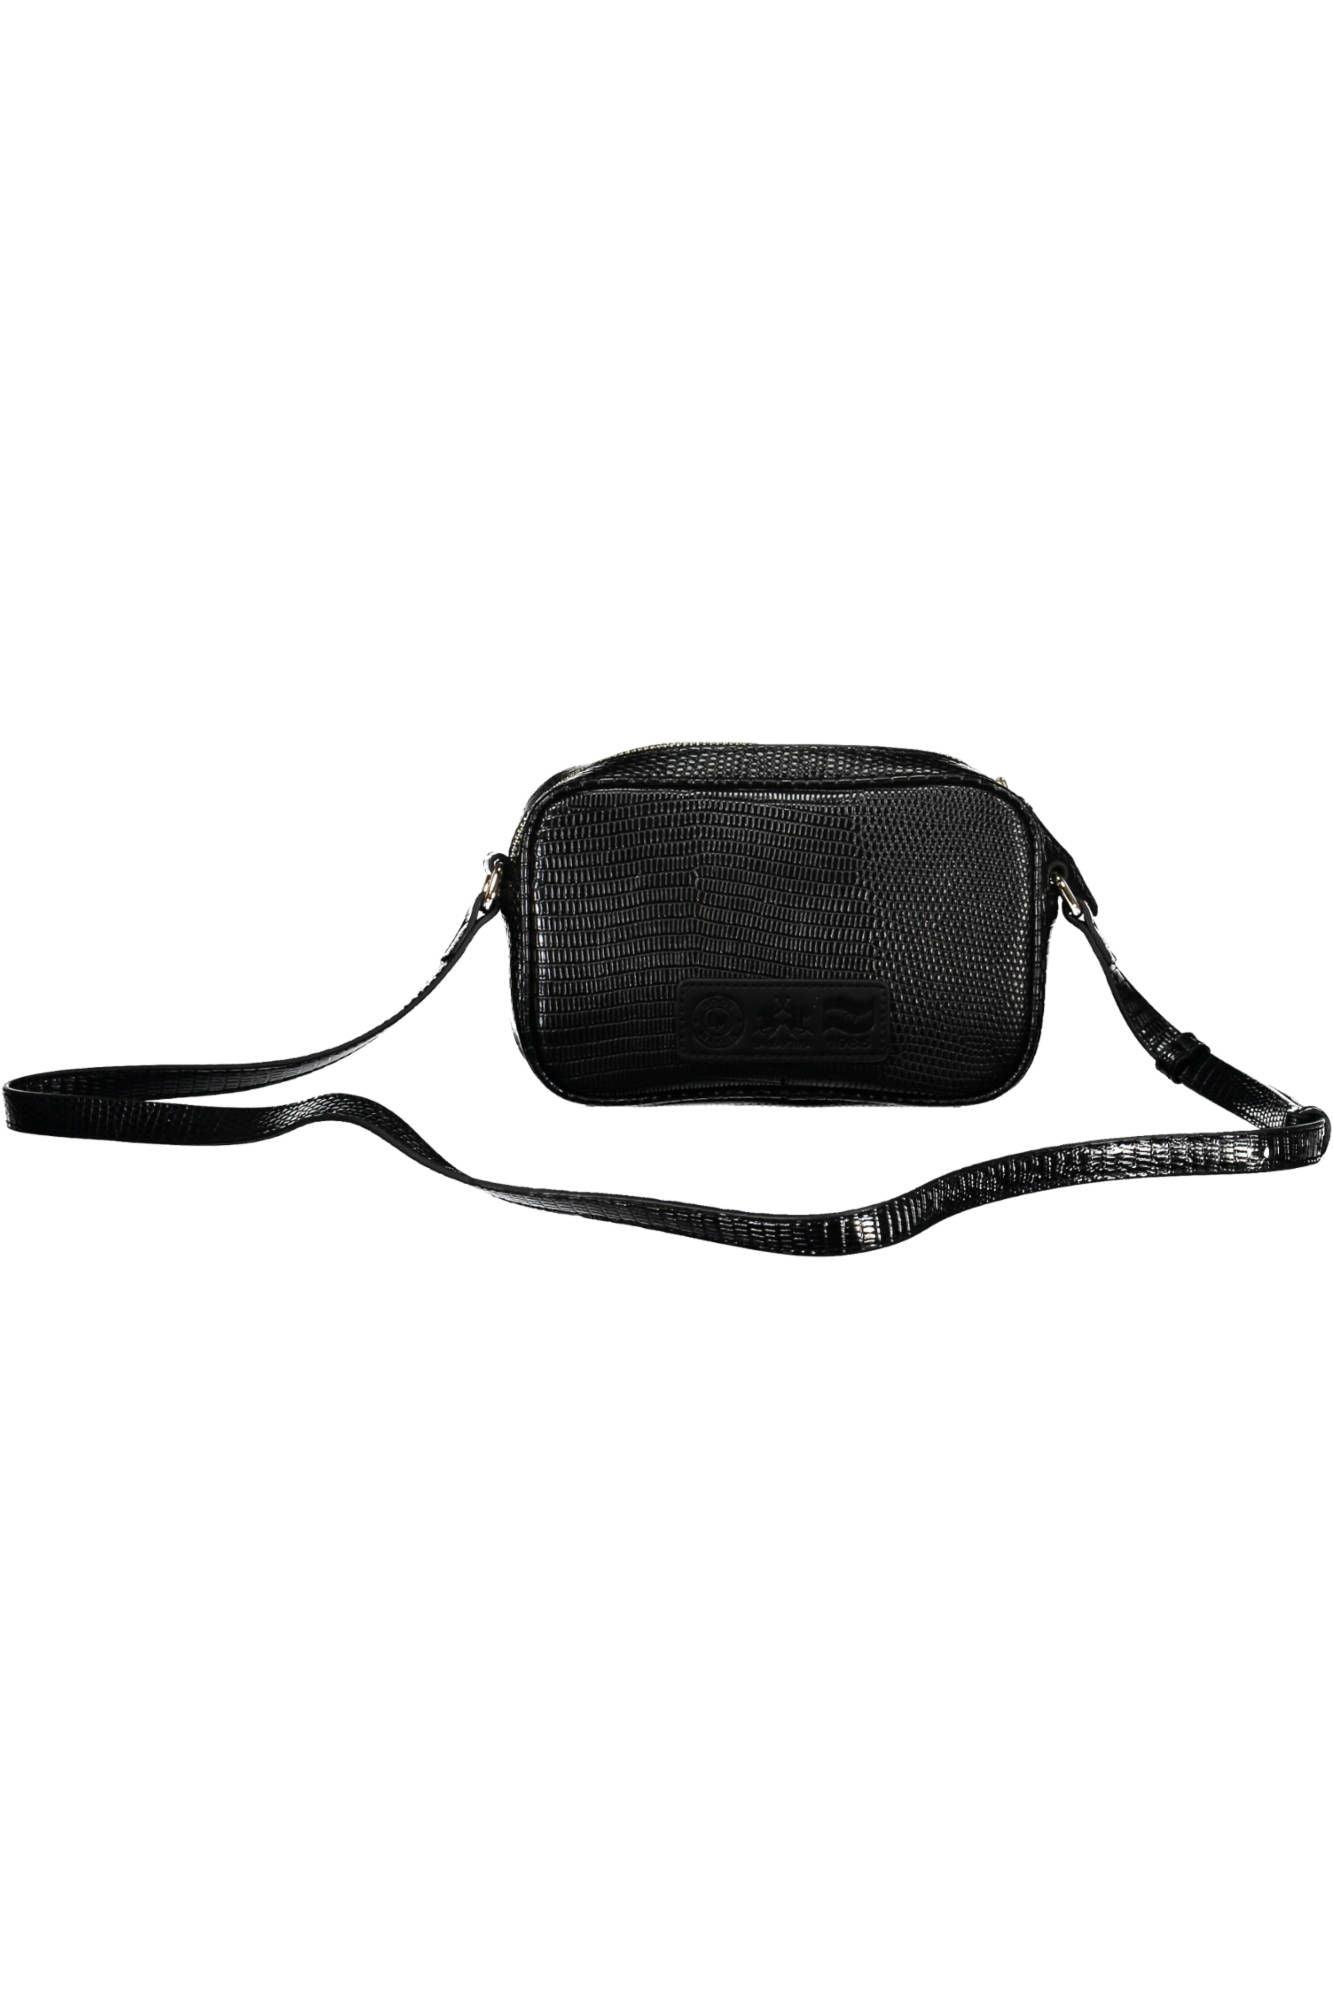 La Martina Sleek Black Shoulder Bag with Contrasting Details - PER.FASHION